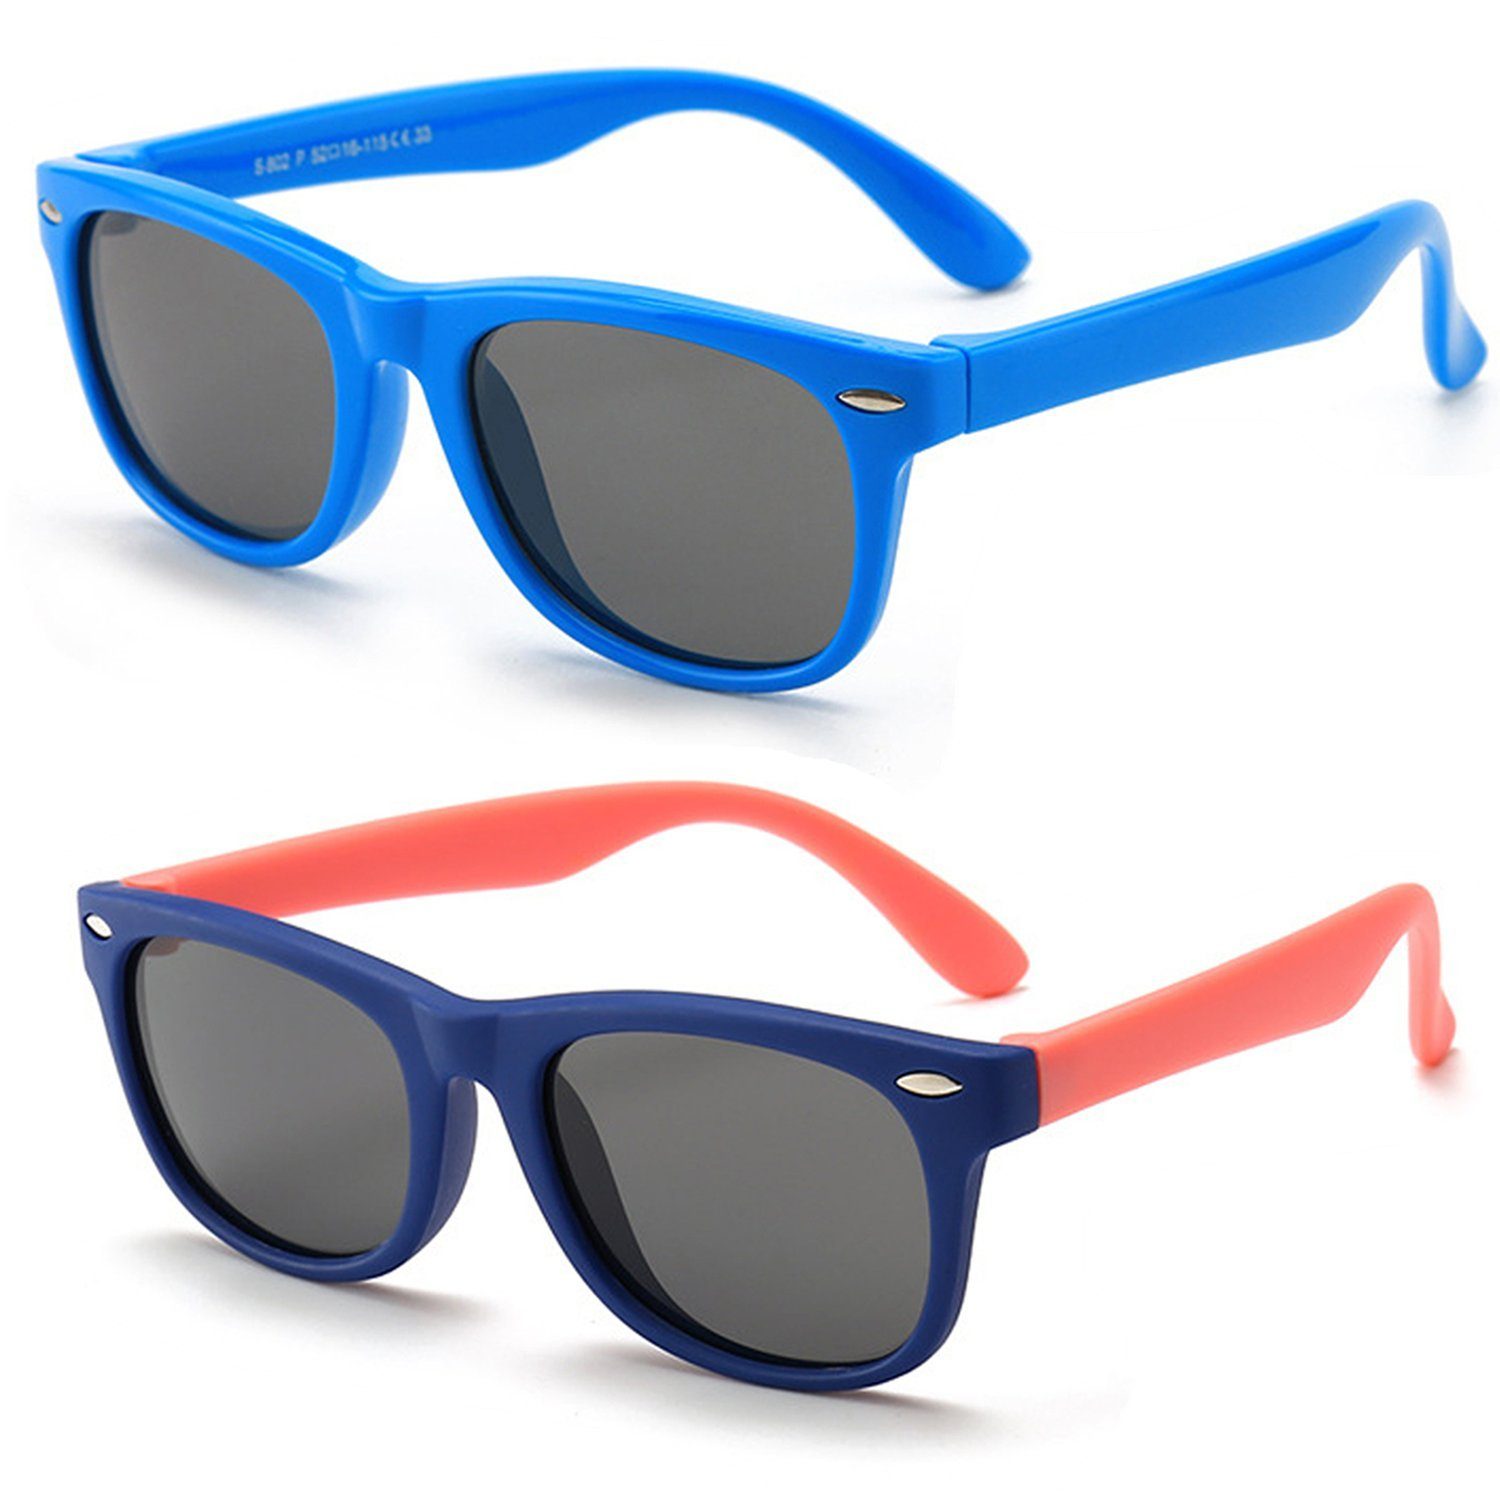 Olotos Sonnenbrille Sonnenbrille für Kinder Mädchen Jungen Gummi 100% UV400 Schutz Brille Blau+Dunkelblau